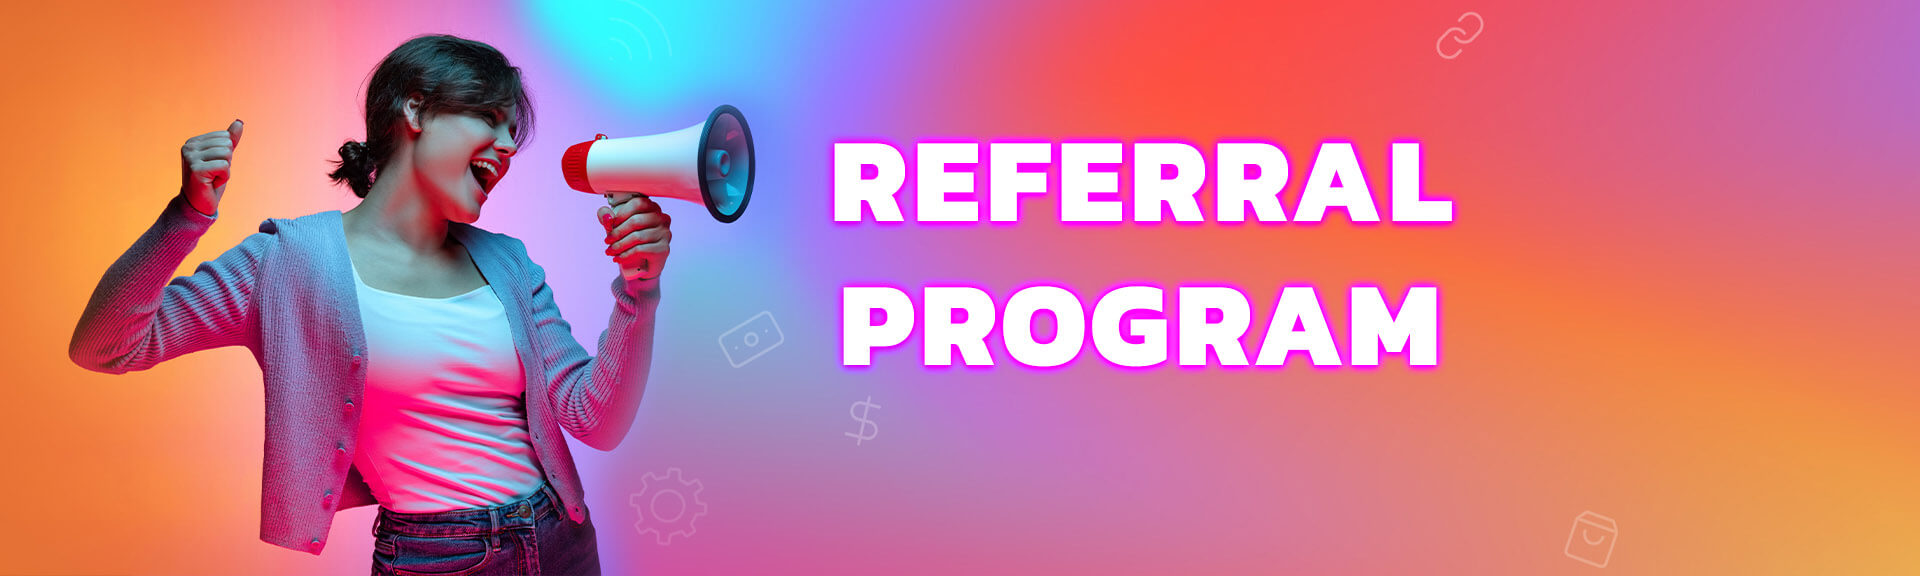 Referral program banner